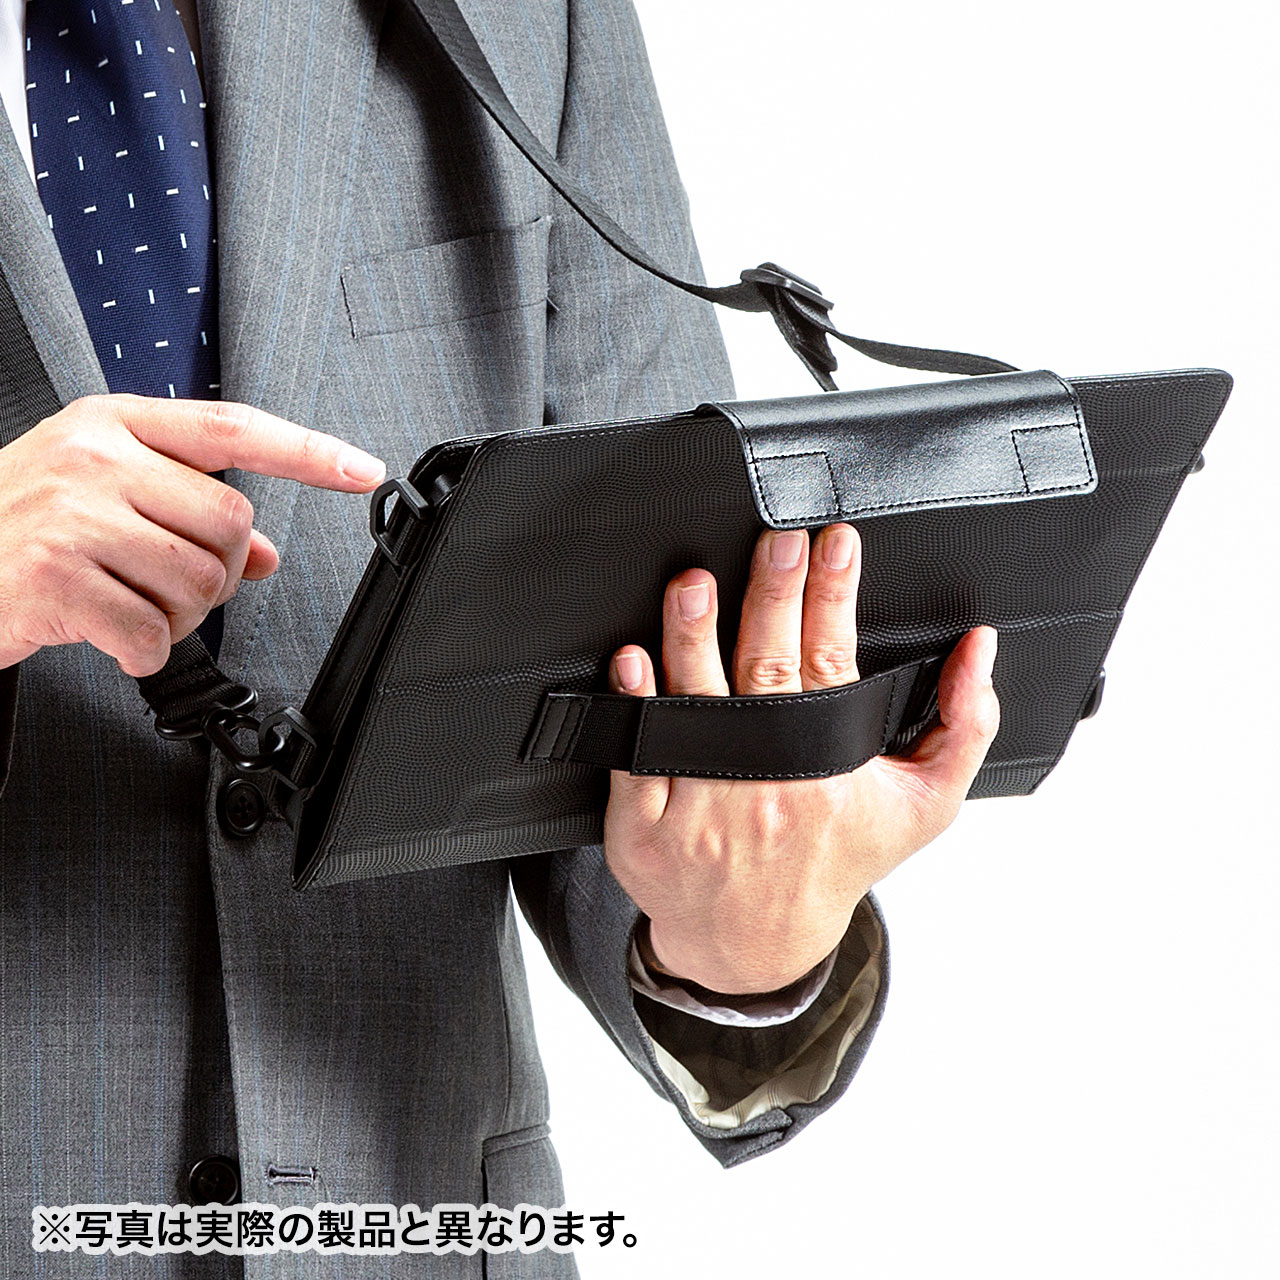 富士通 ARROWS Tab Q5010専用ソフトレザーケースを発売 | サンワサプライ株式会社